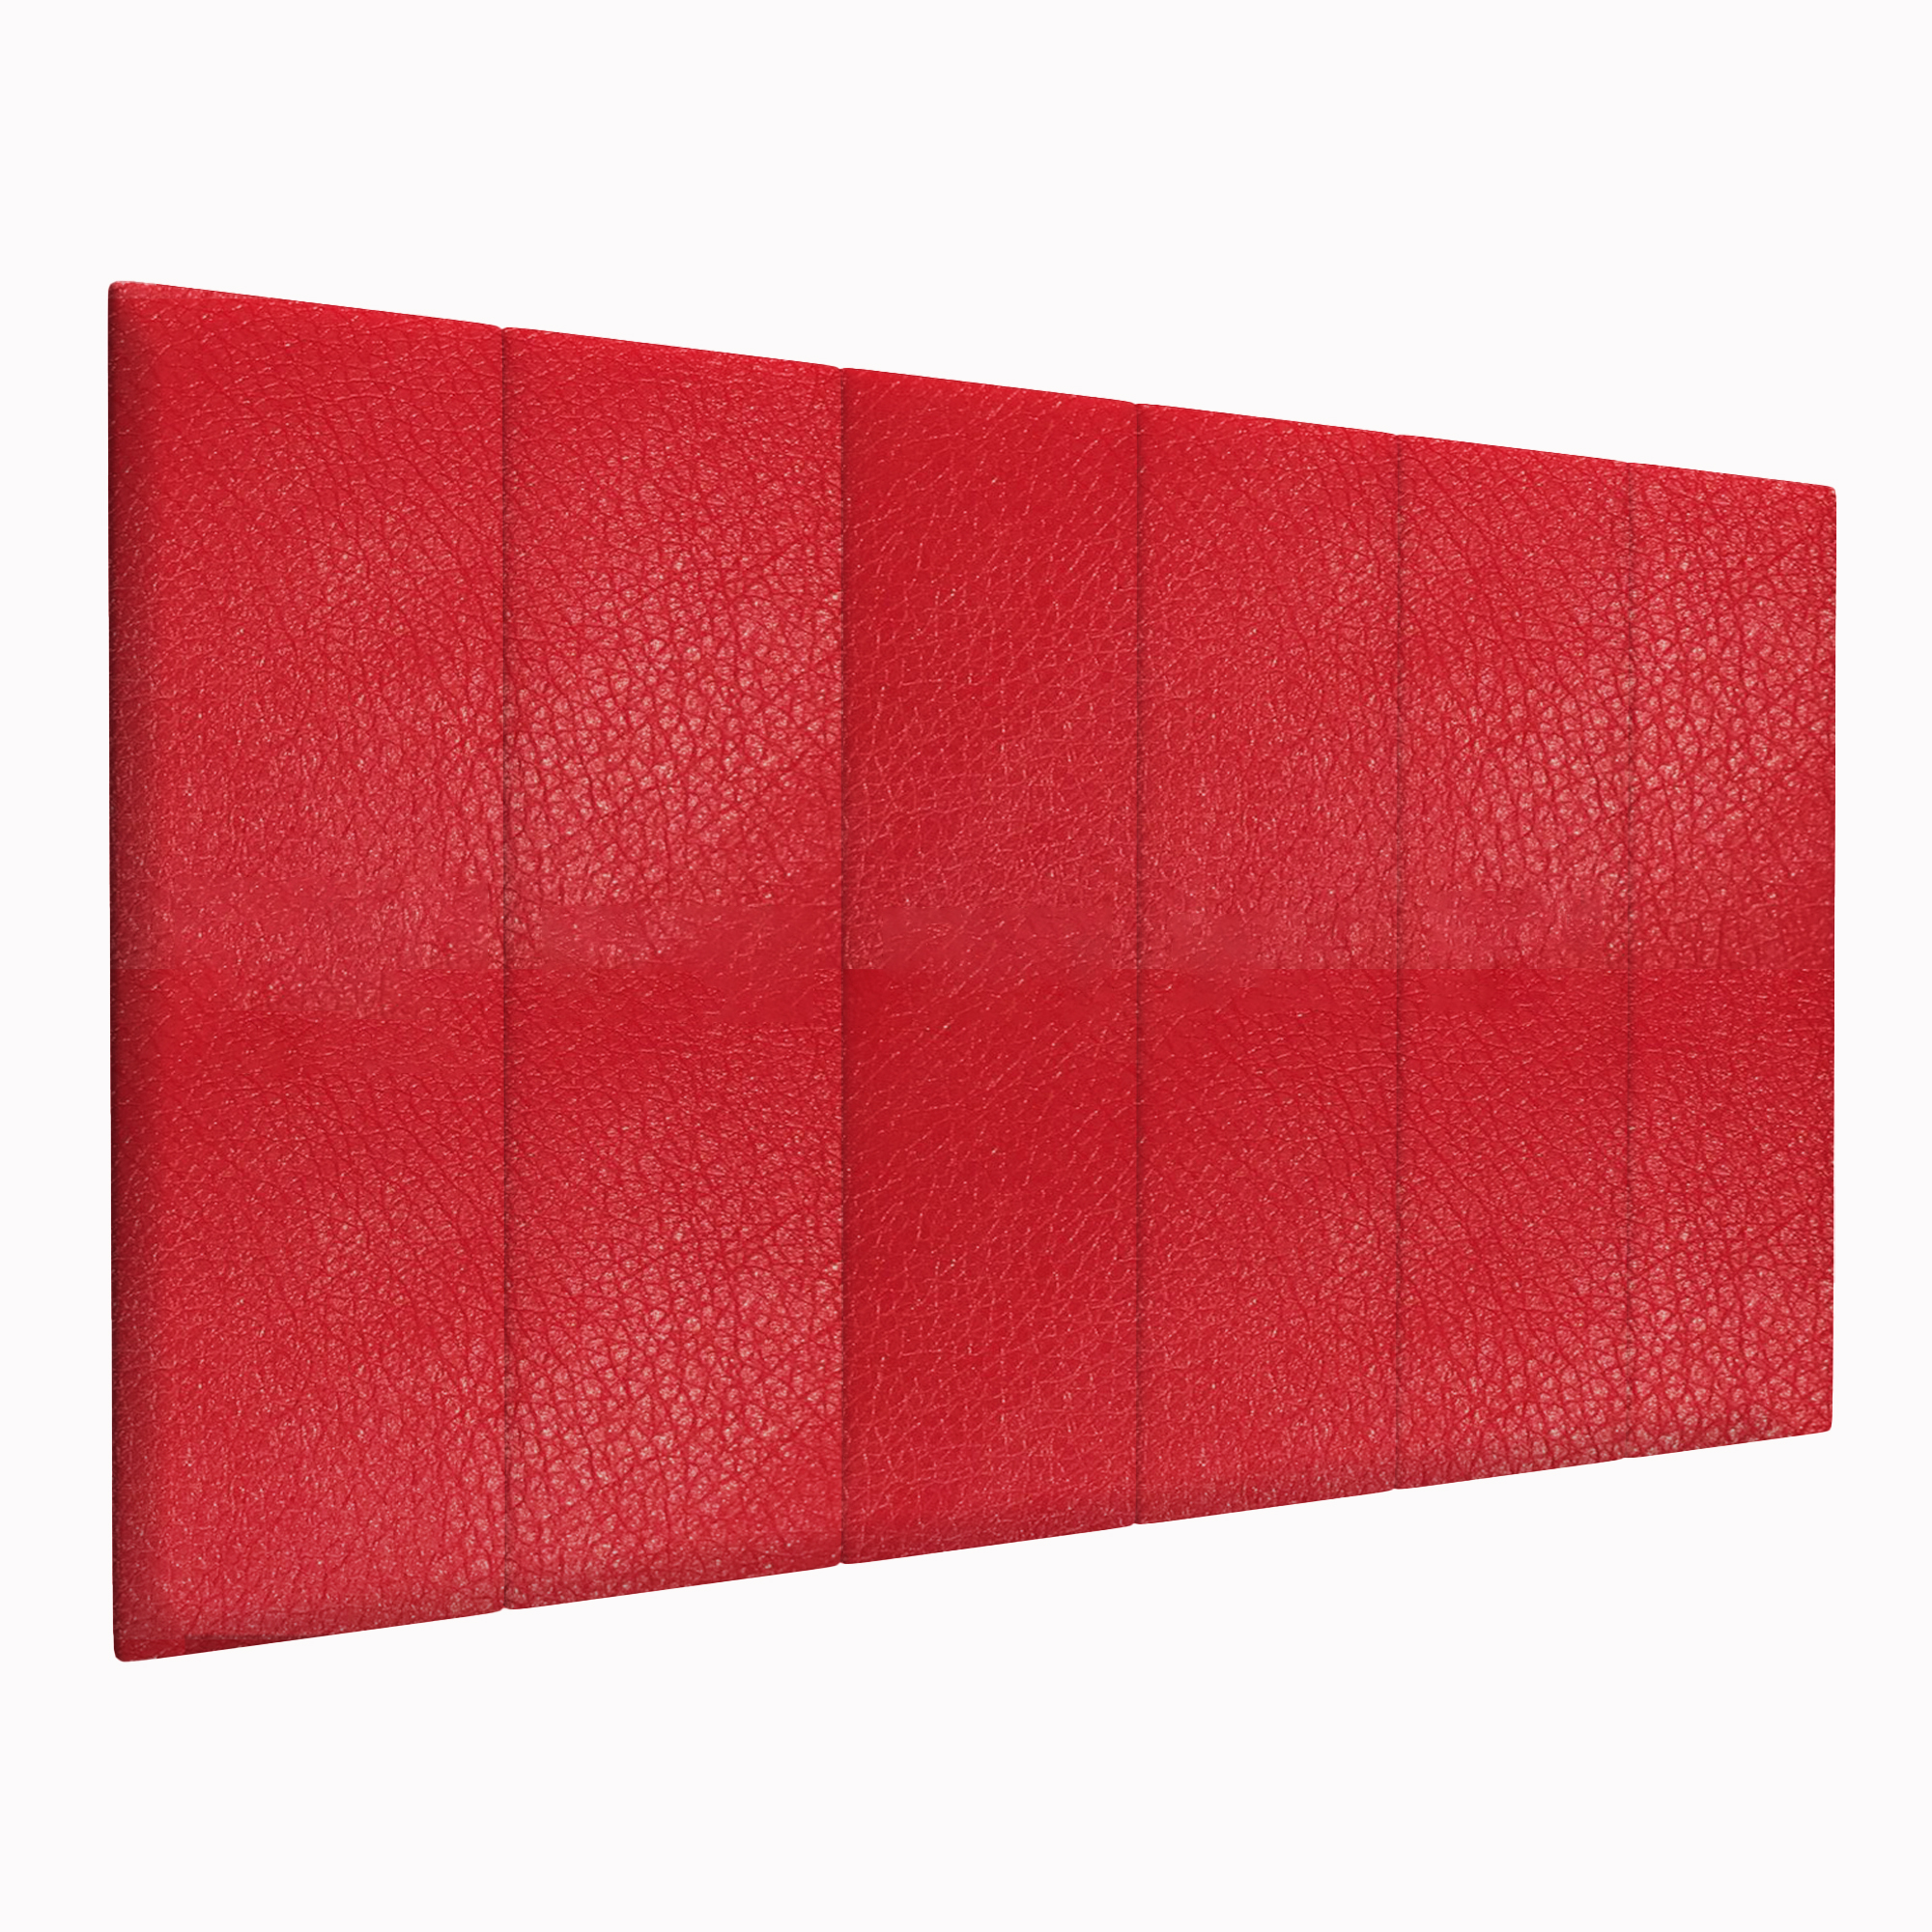 фото Шумо звукоизоляционные мягкие панели eco leather red 30х100 см 1 шт. tartilla